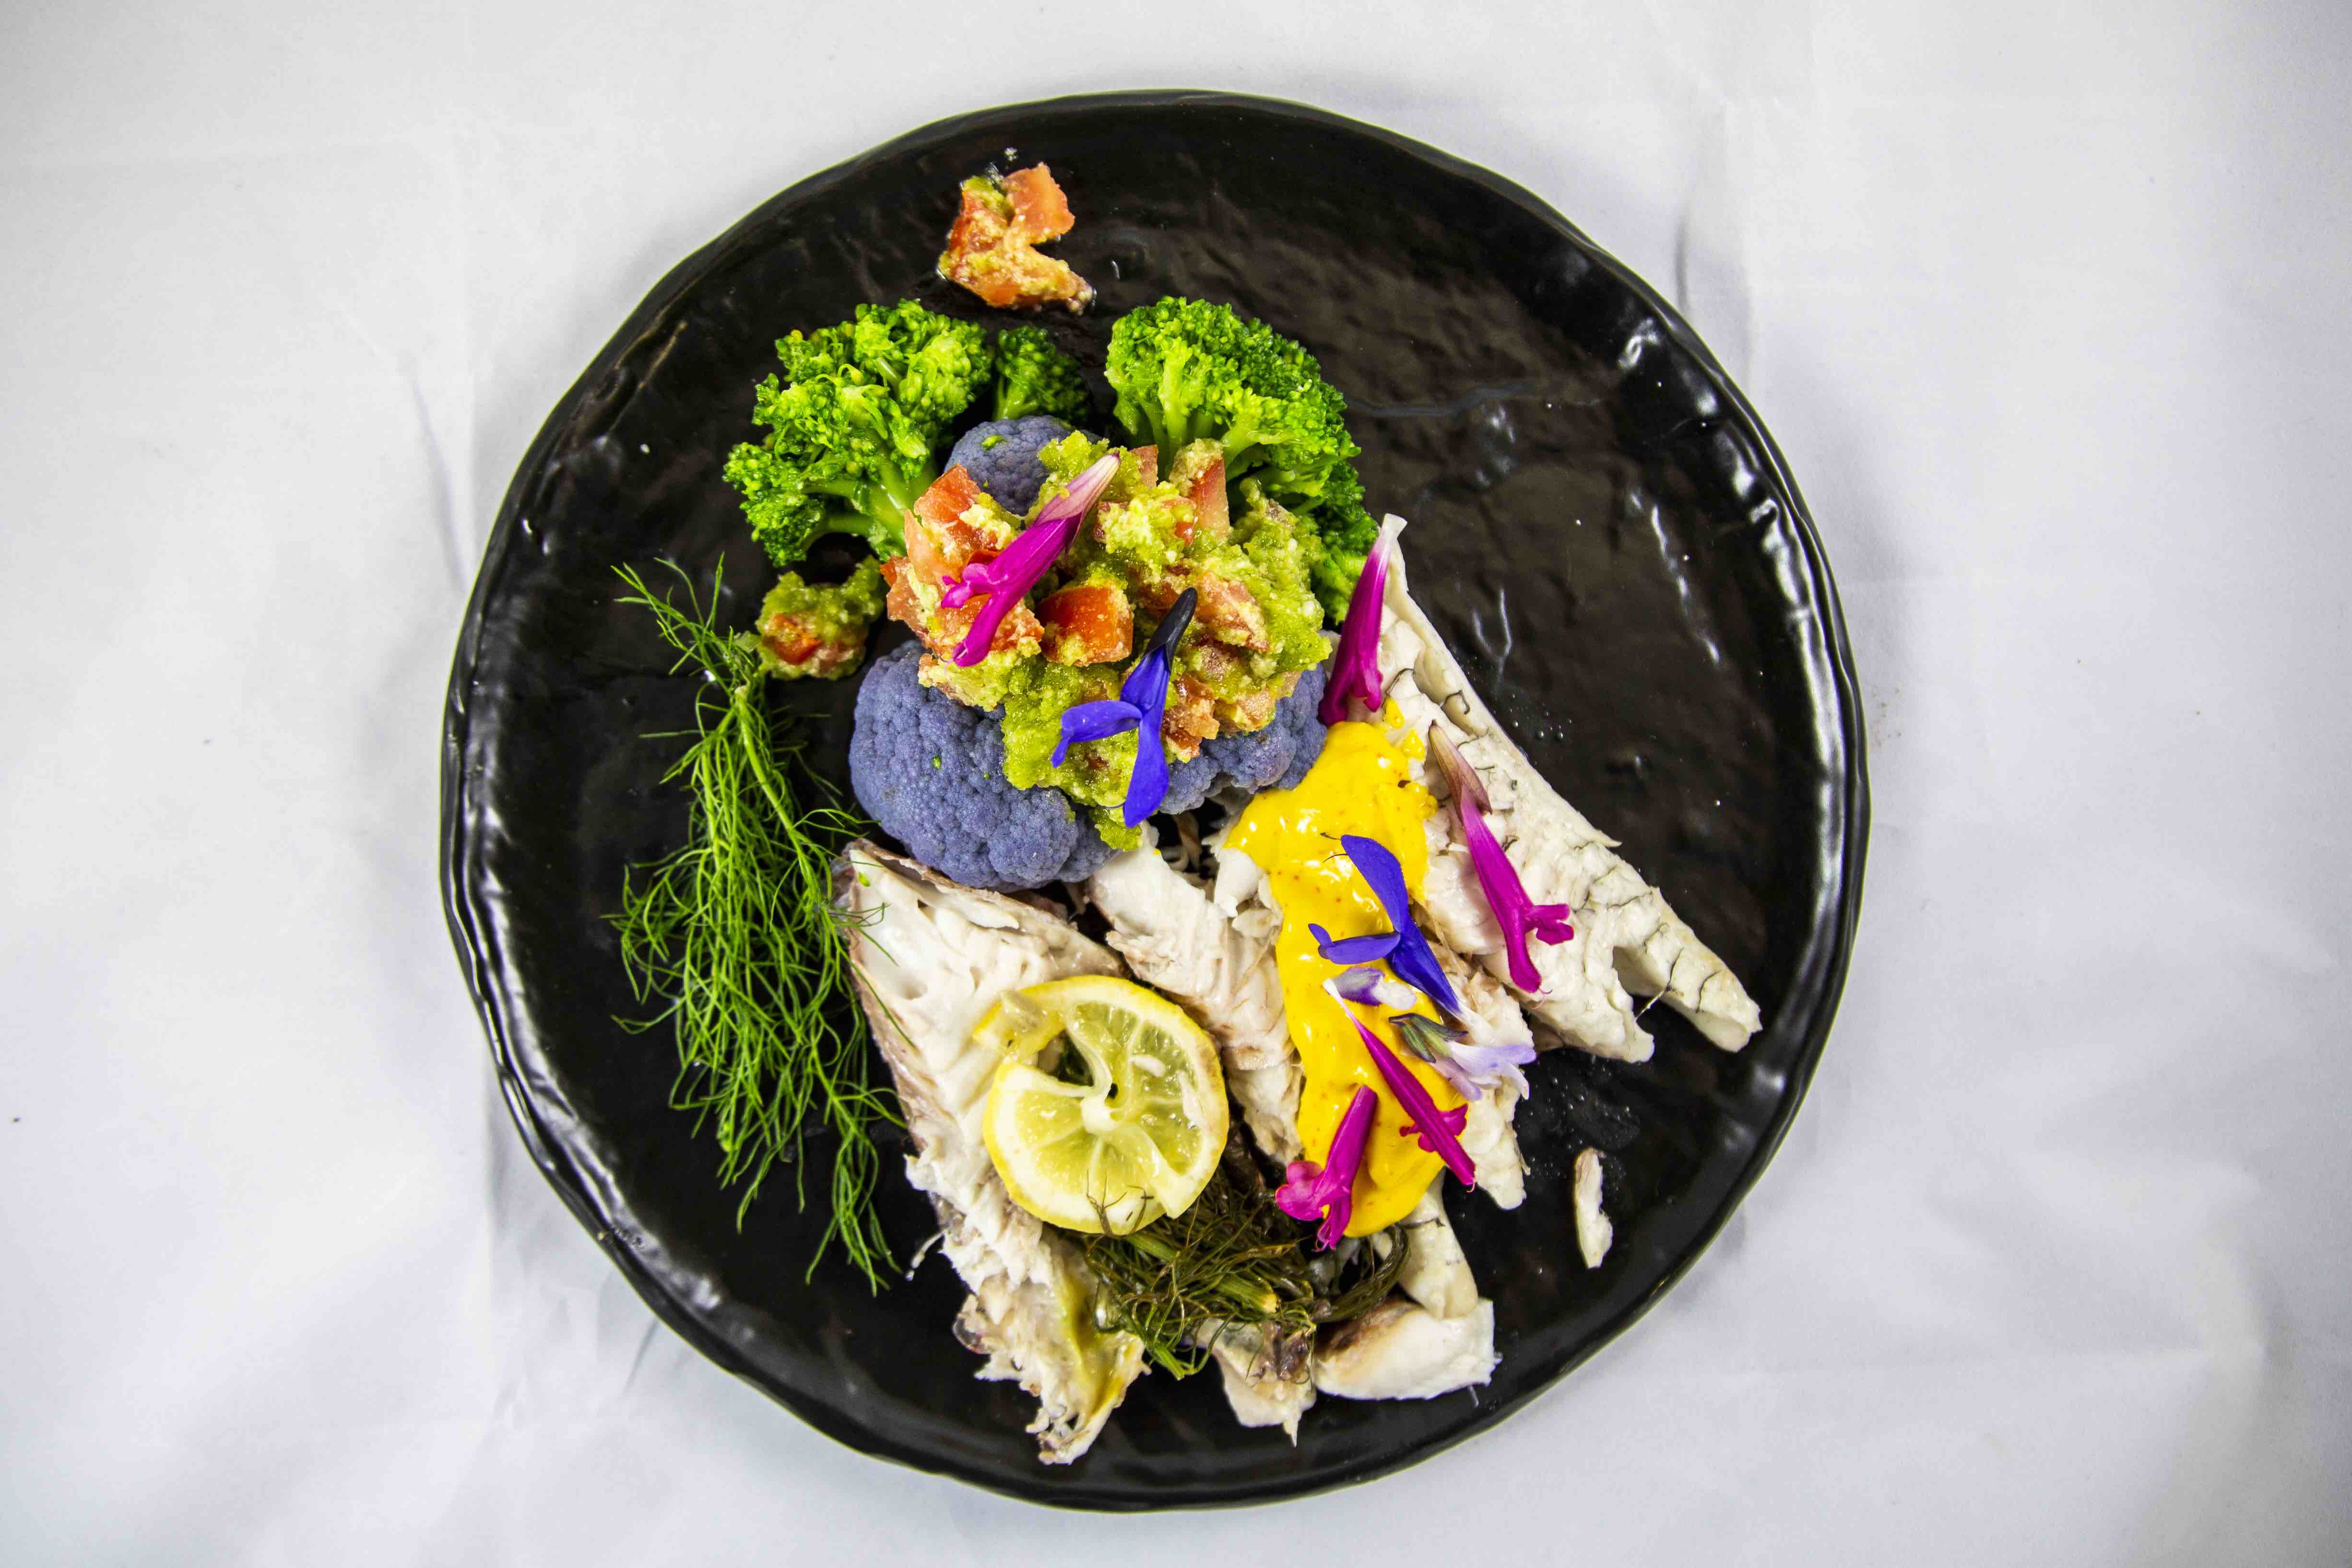 A maggio Fish from Greece propone una ricetta vivace e floreale a base di pesce fresco greco per celebrare il mese dei fiori e dei colori